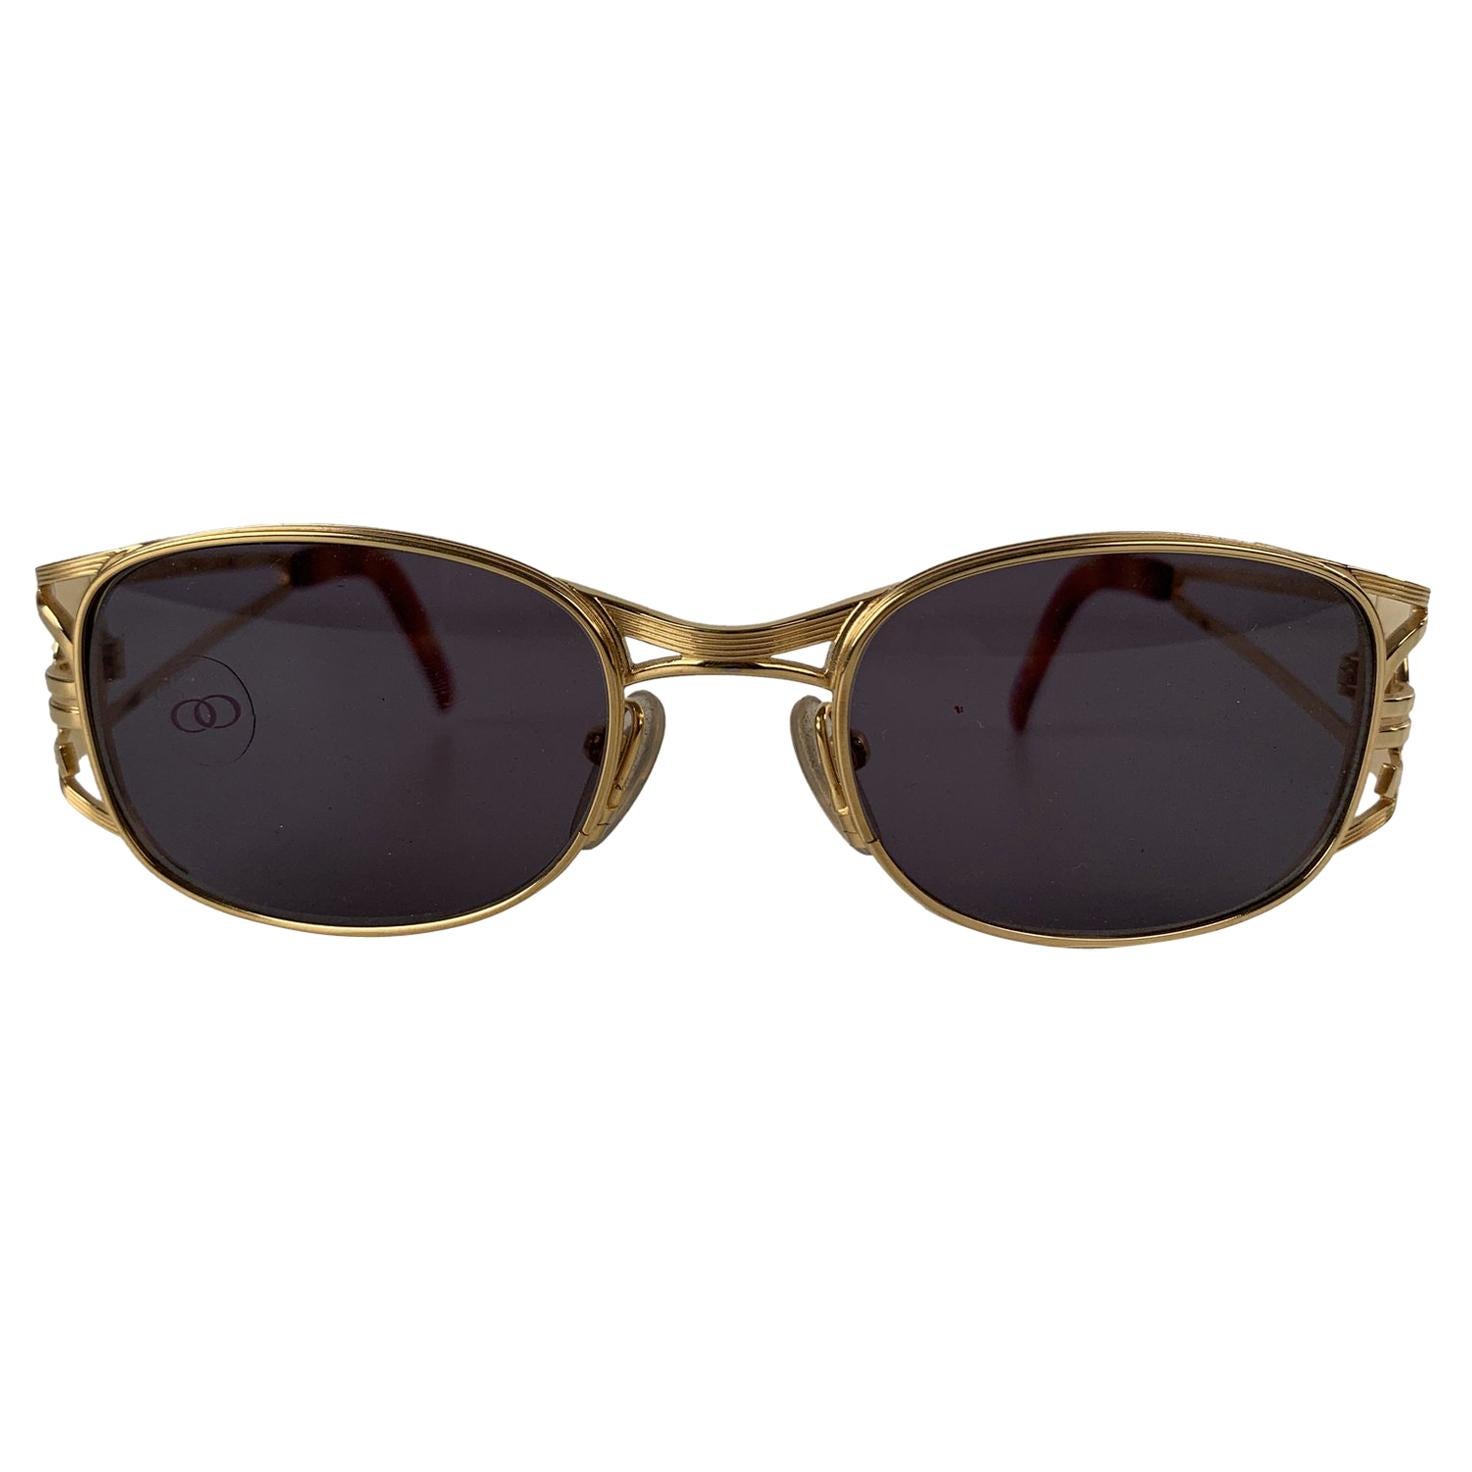 Jean Paul Gaultier Vintage Gold Tone Sunglasses Mod. 58-5101